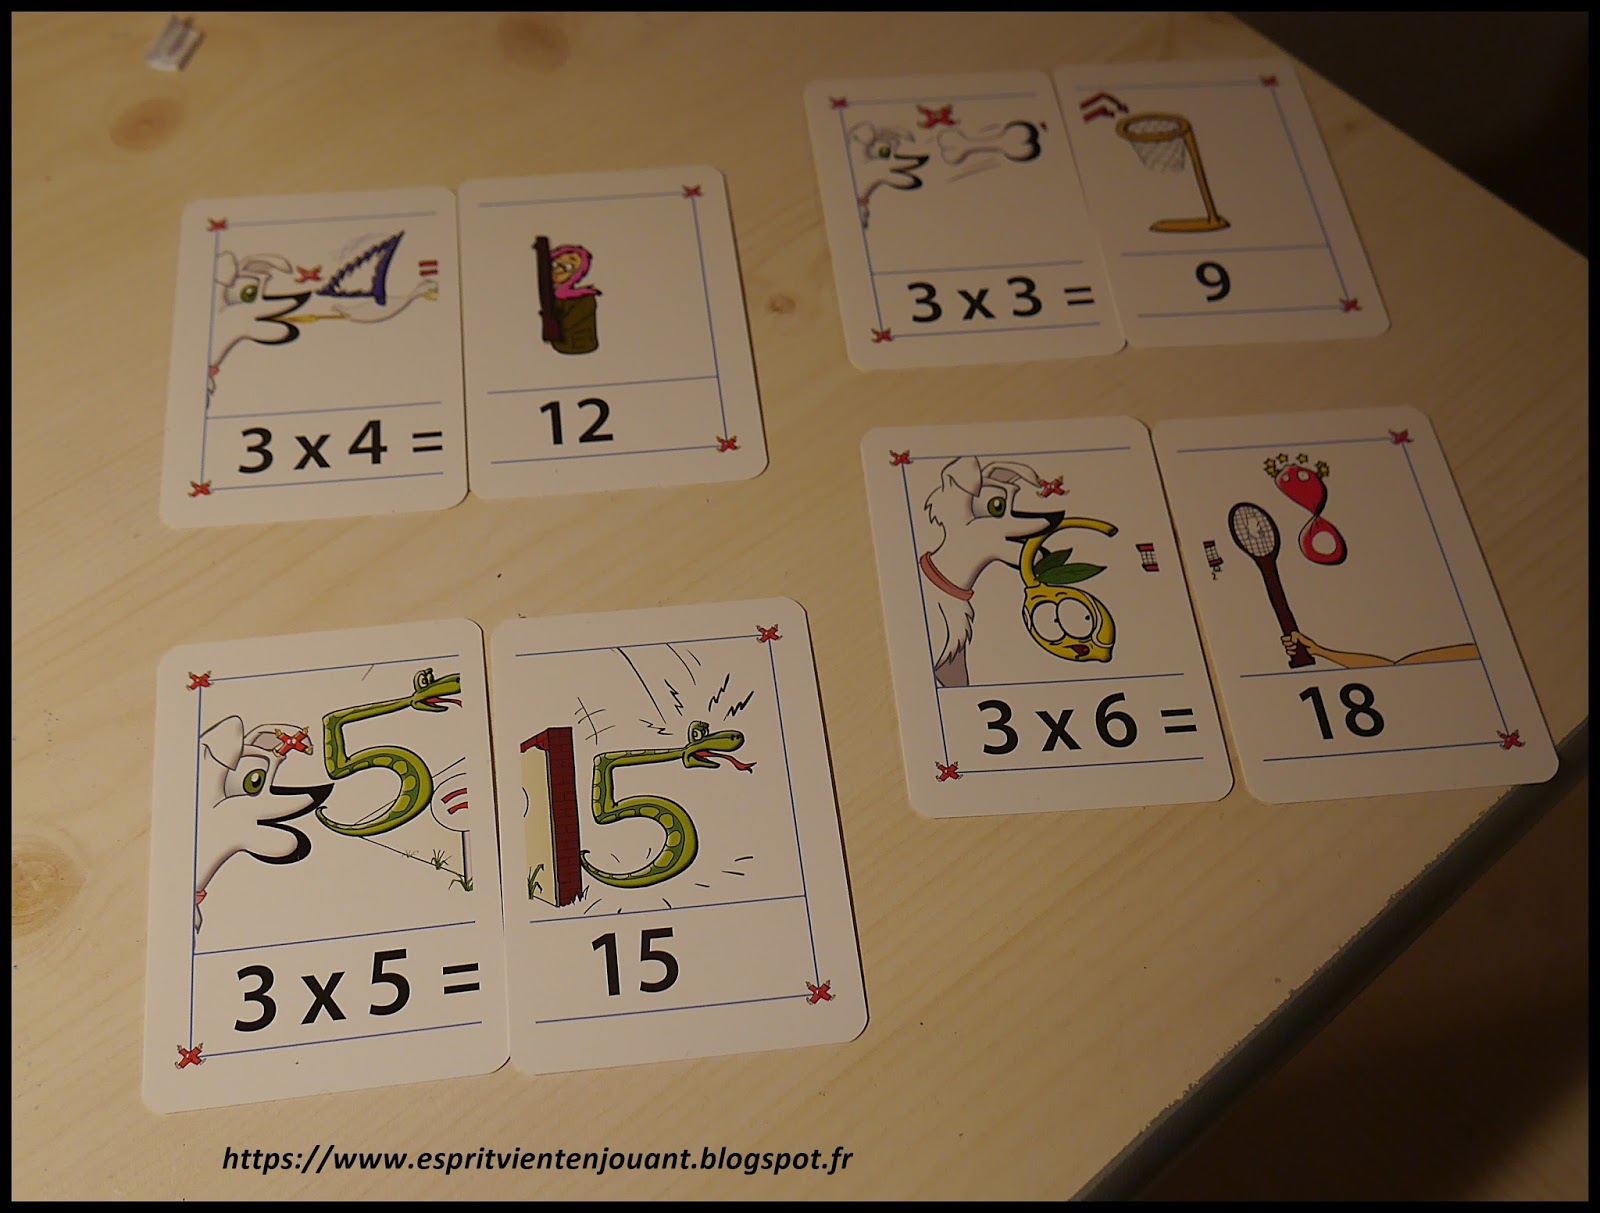 L'esprit vient en jouant: [Activité enfants] Apprendre les tables de  multiplication avec des images mentales (Multimalin)